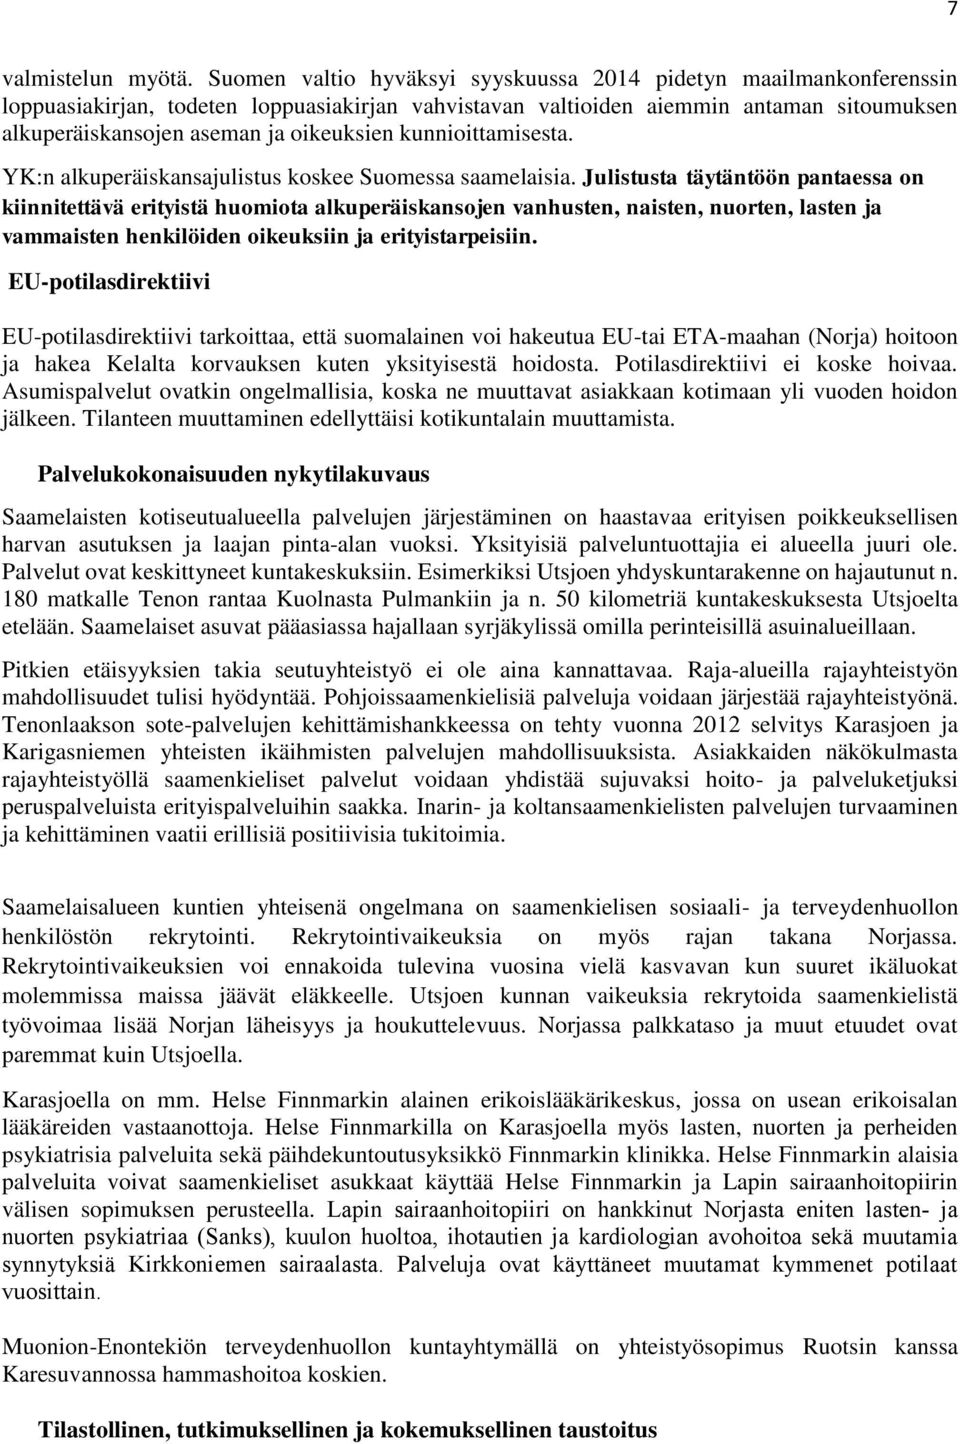 kunnioittamisesta. YK:n alkuperäiskansajulistus koskee Suomessa saamelaisia.